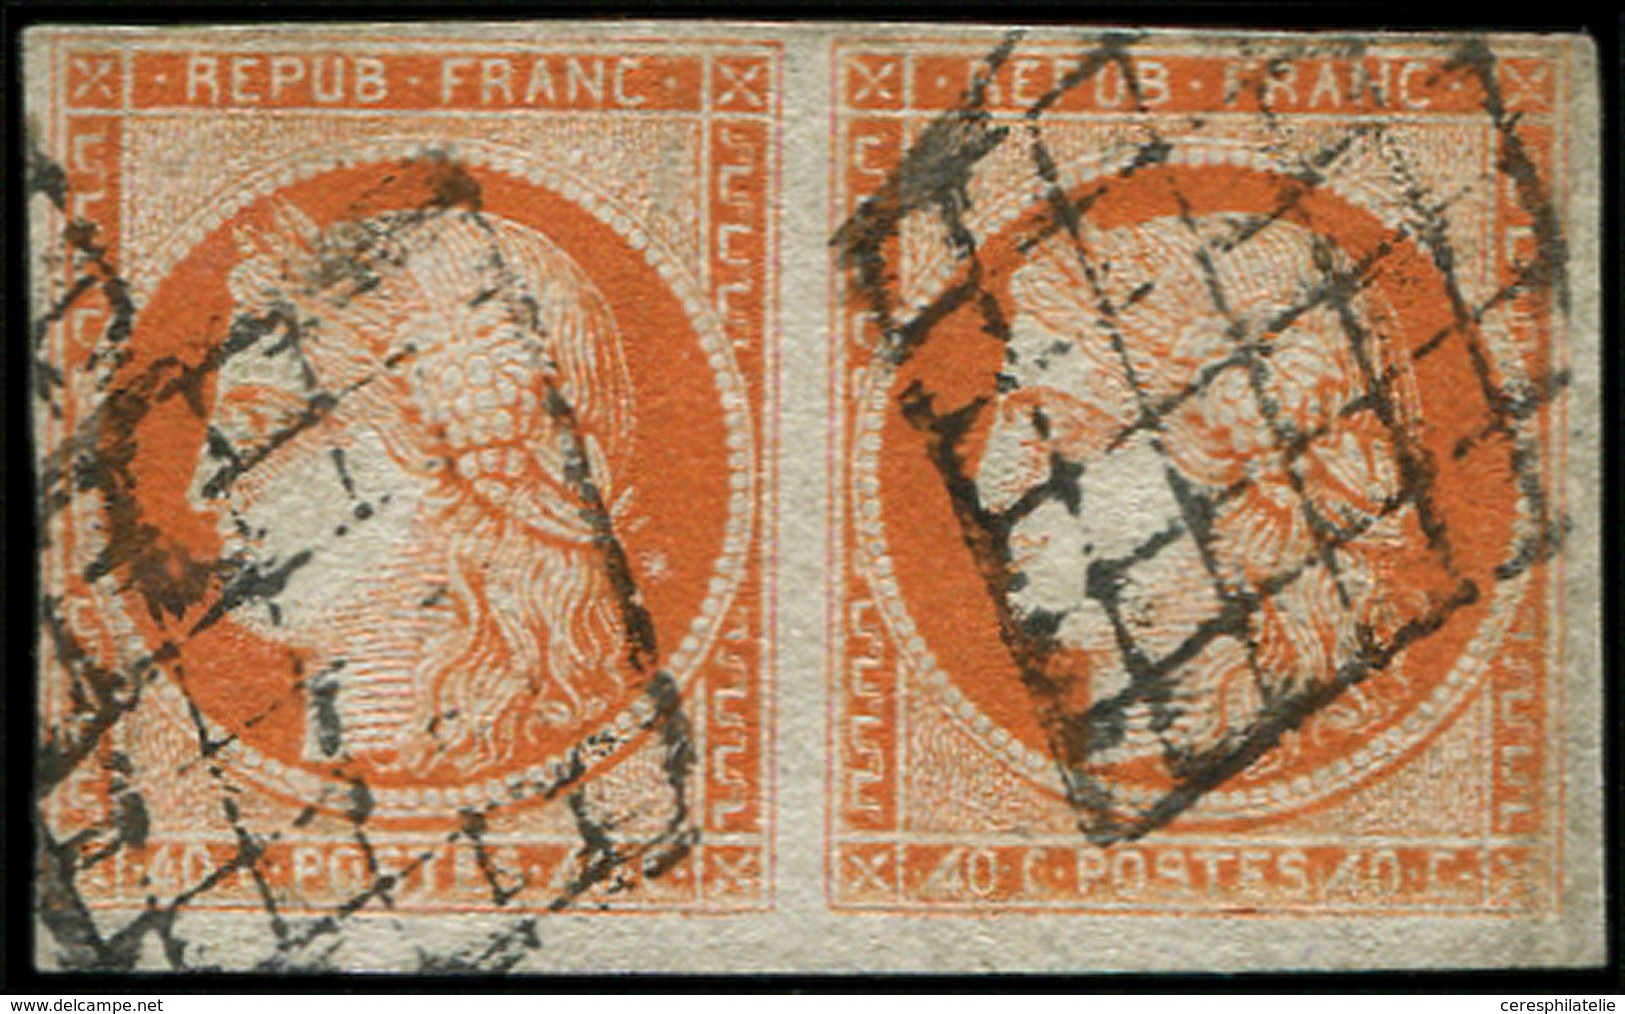 EMISSION DE 1849 5f   40c. Orange, 4 RETOUCHE Tenant à Normal, Obl. GRILLE, Restauré, Aspect TB - 1849-1850 Ceres